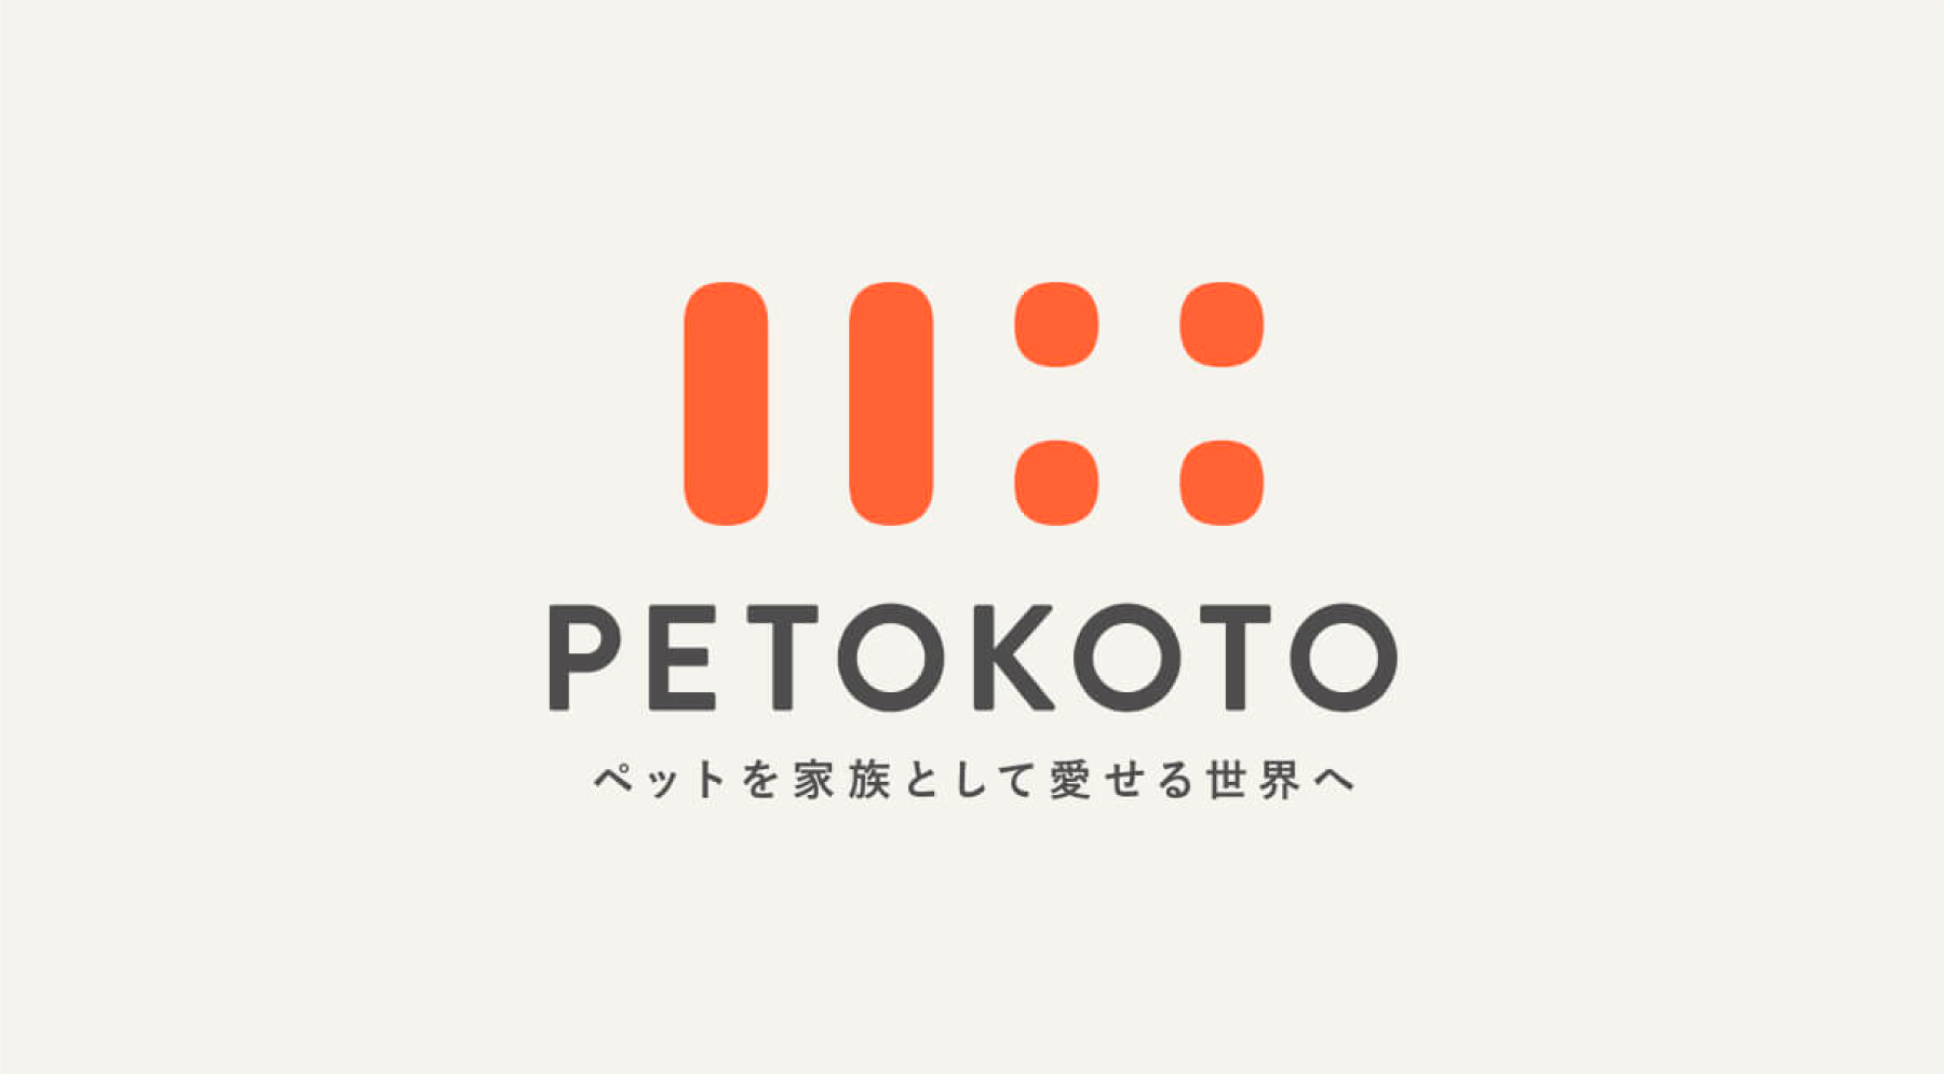 株式会社PETOKOTO コーポレートアイデンティティ